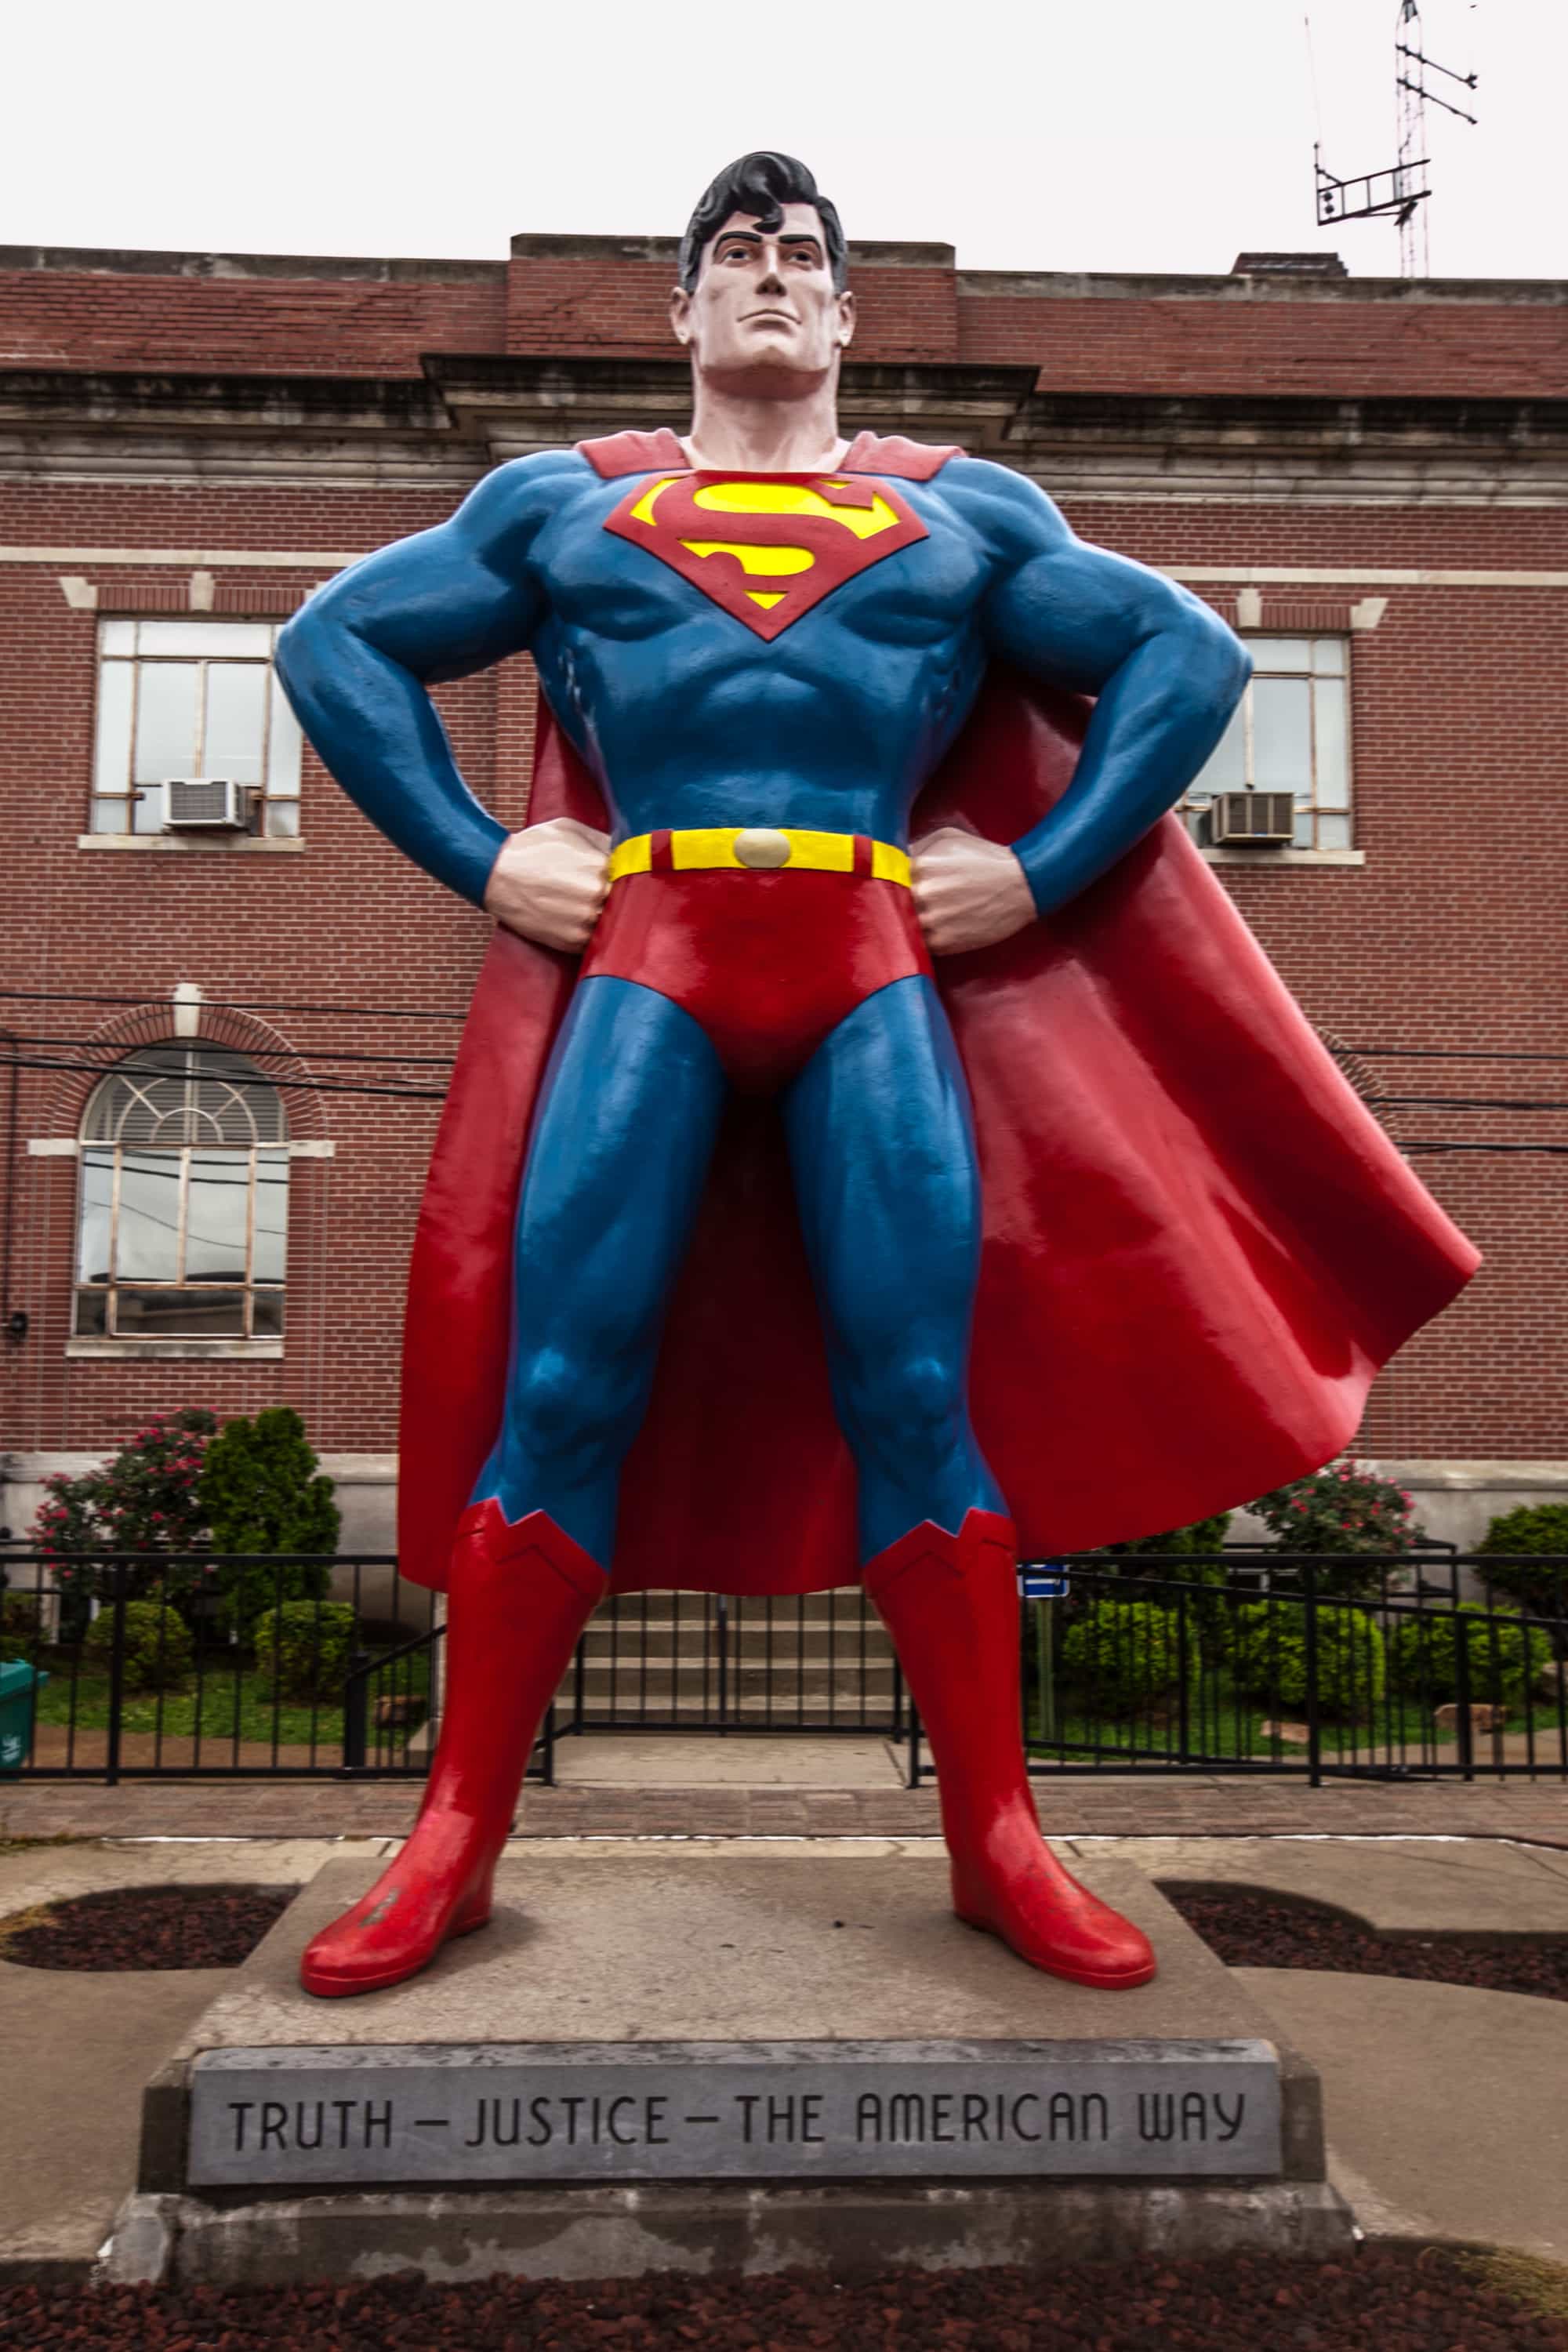 Giant Superman Statue in Metropolis, Illinois.